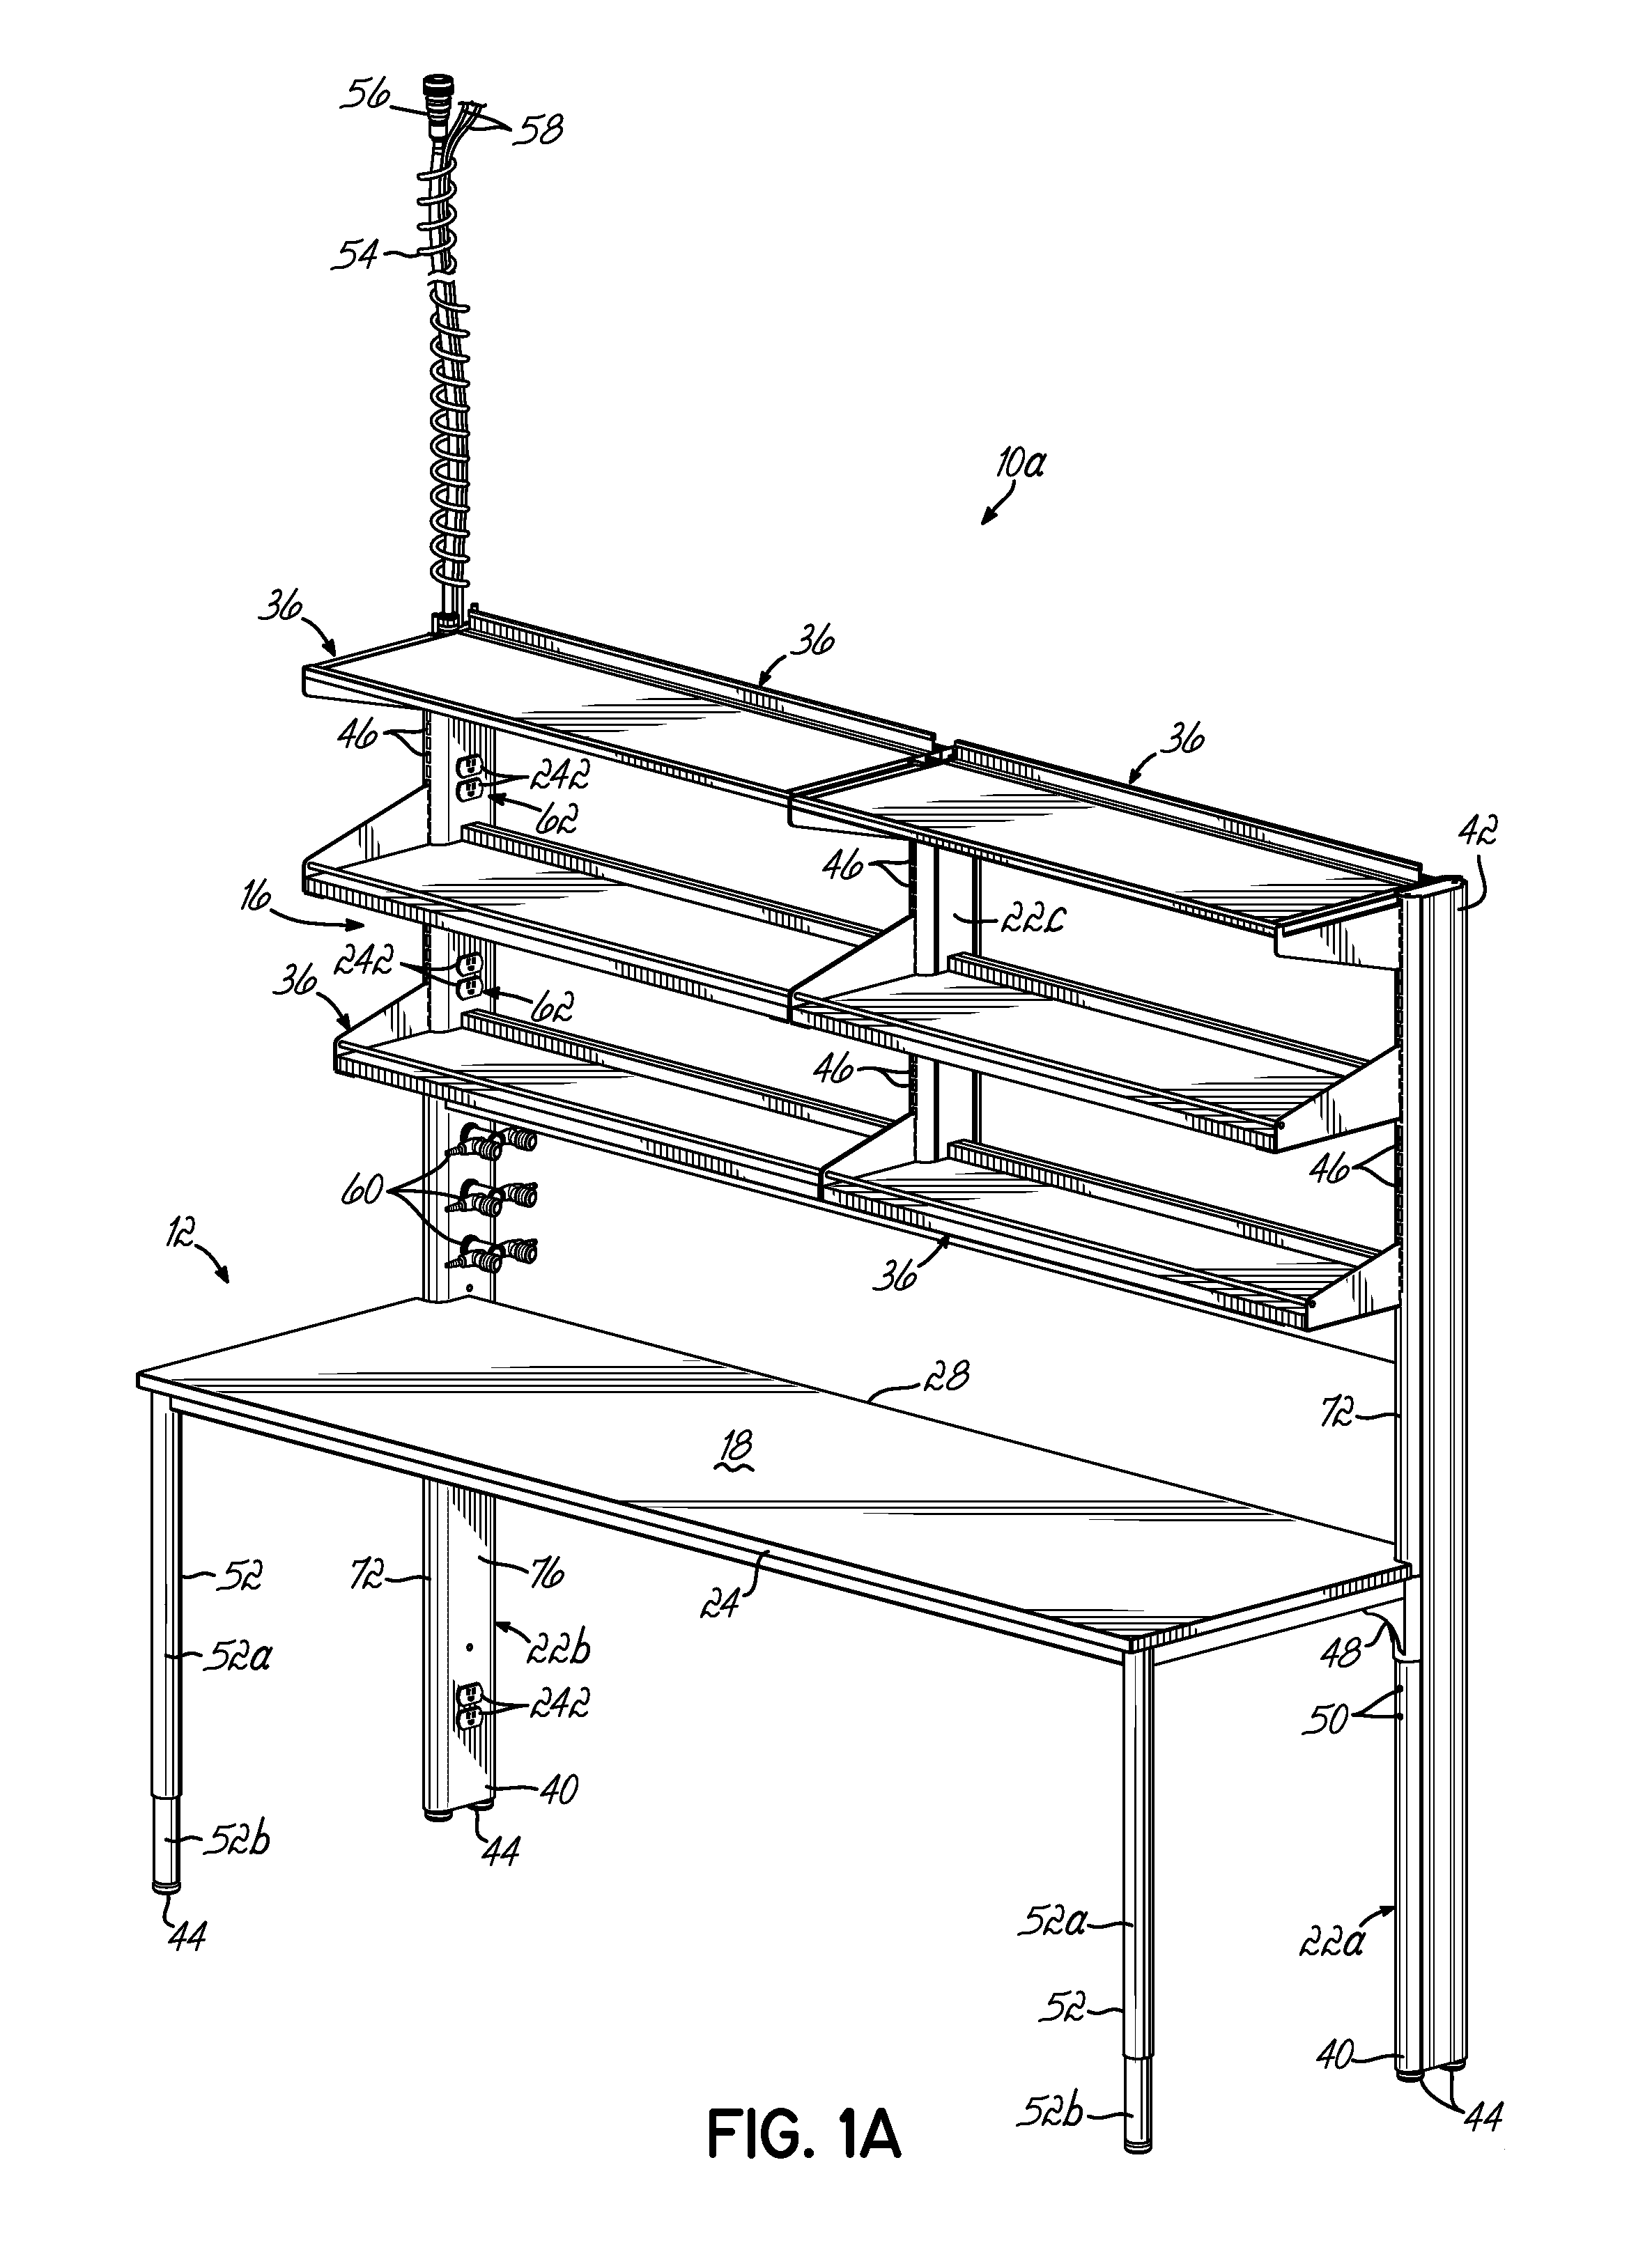 Modular Furniture System